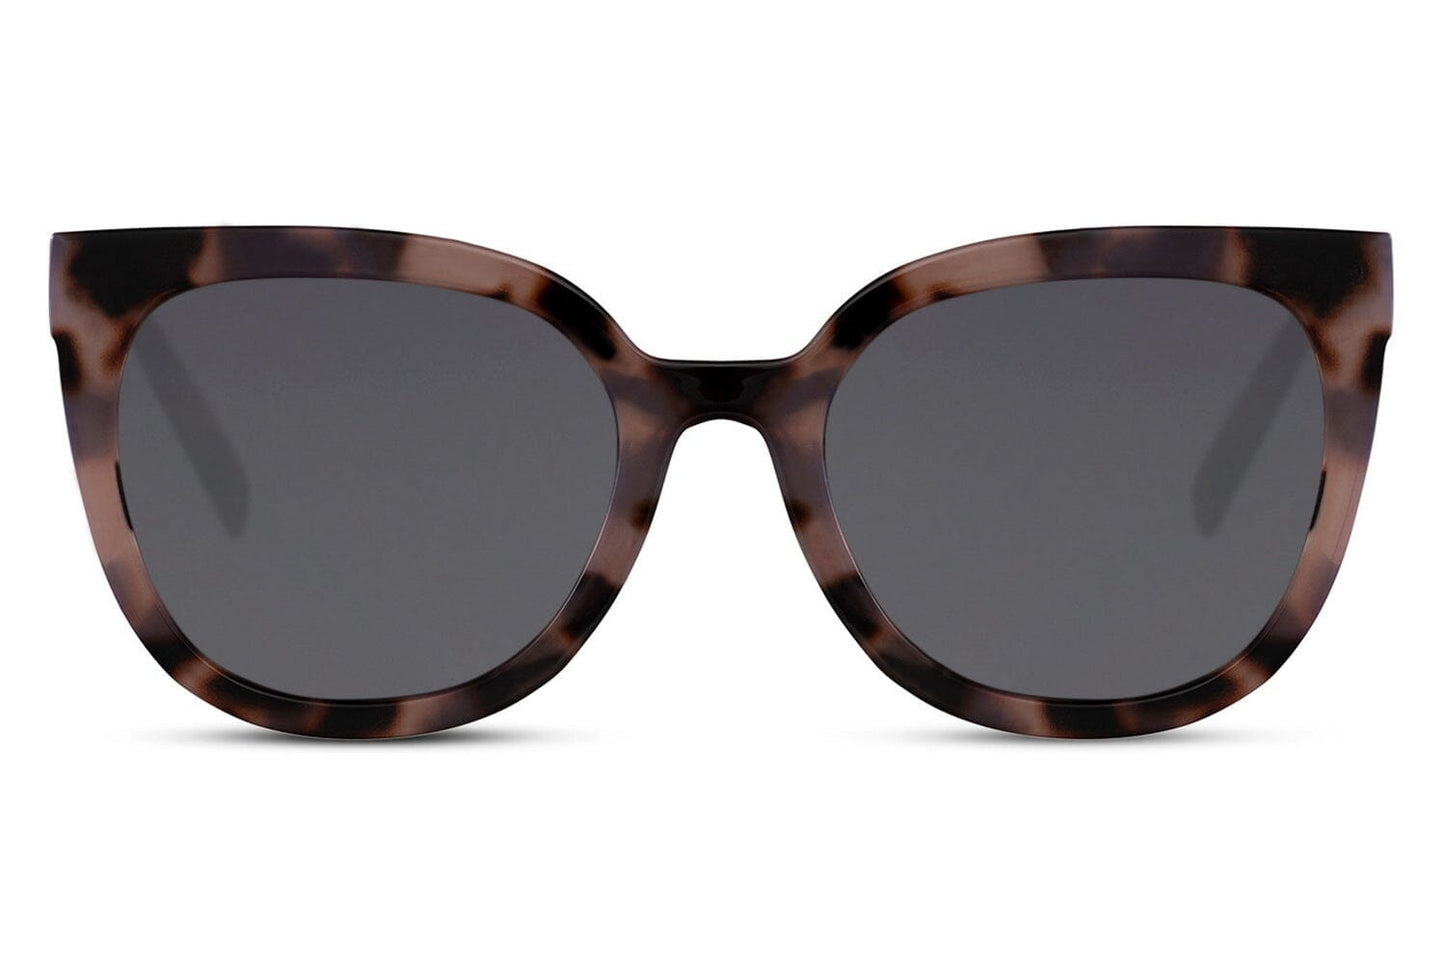 Round cat eye sunglasses. Black lenses. Tortoiseshell frames. UV400 protected.